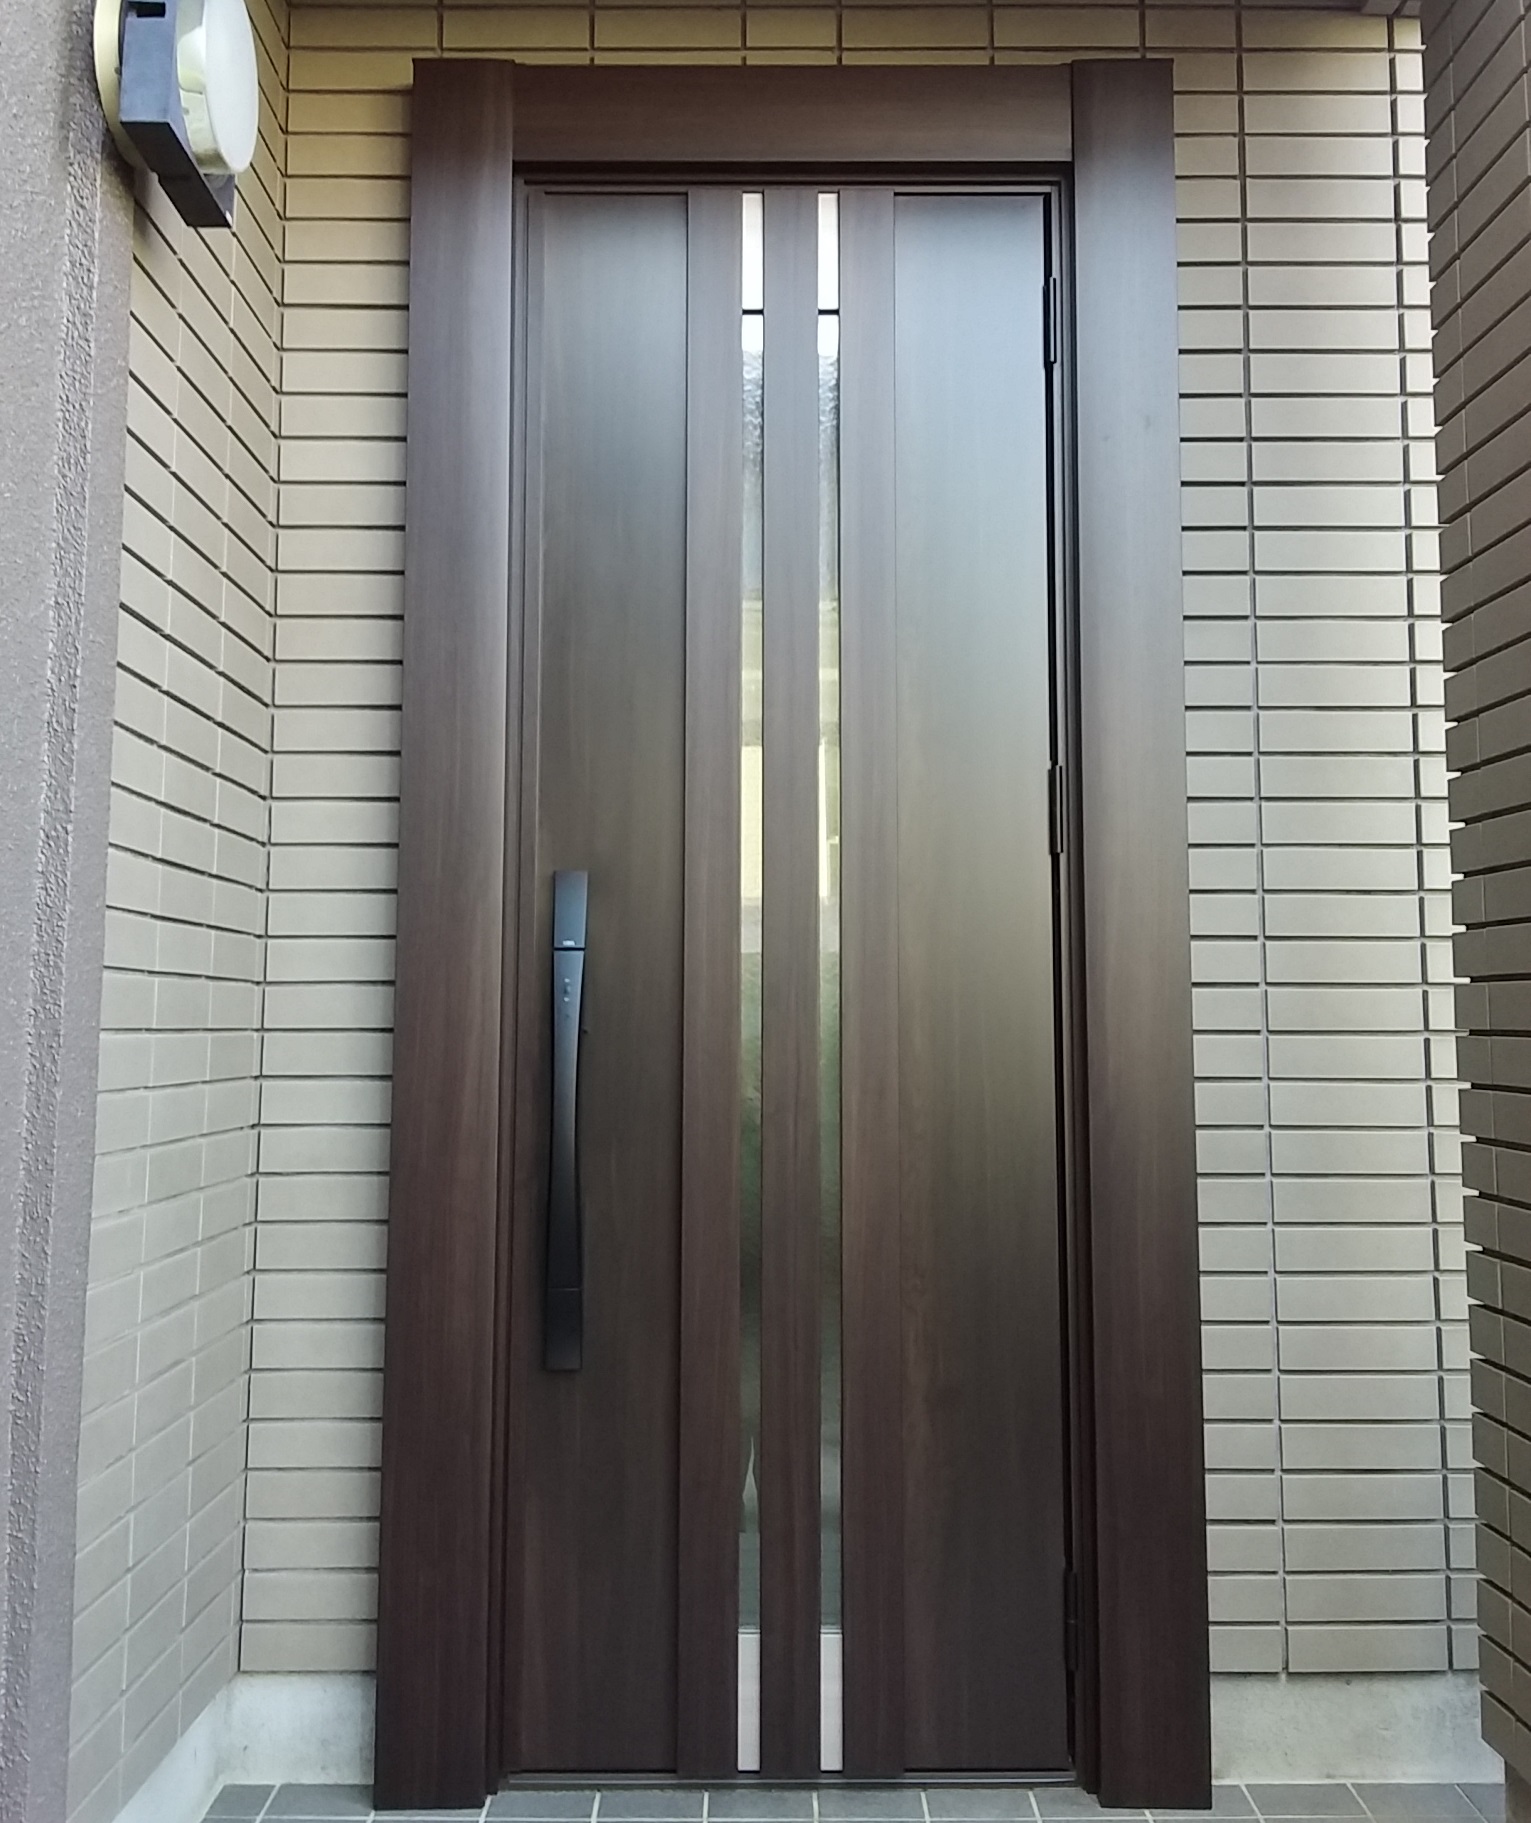 ドアの幅でデザインの印象が変わることがあります【LIXILリシェントM27型】千葉県松戸市の工事事例 | 玄関ドアリフォームの玄関ドアマイスター